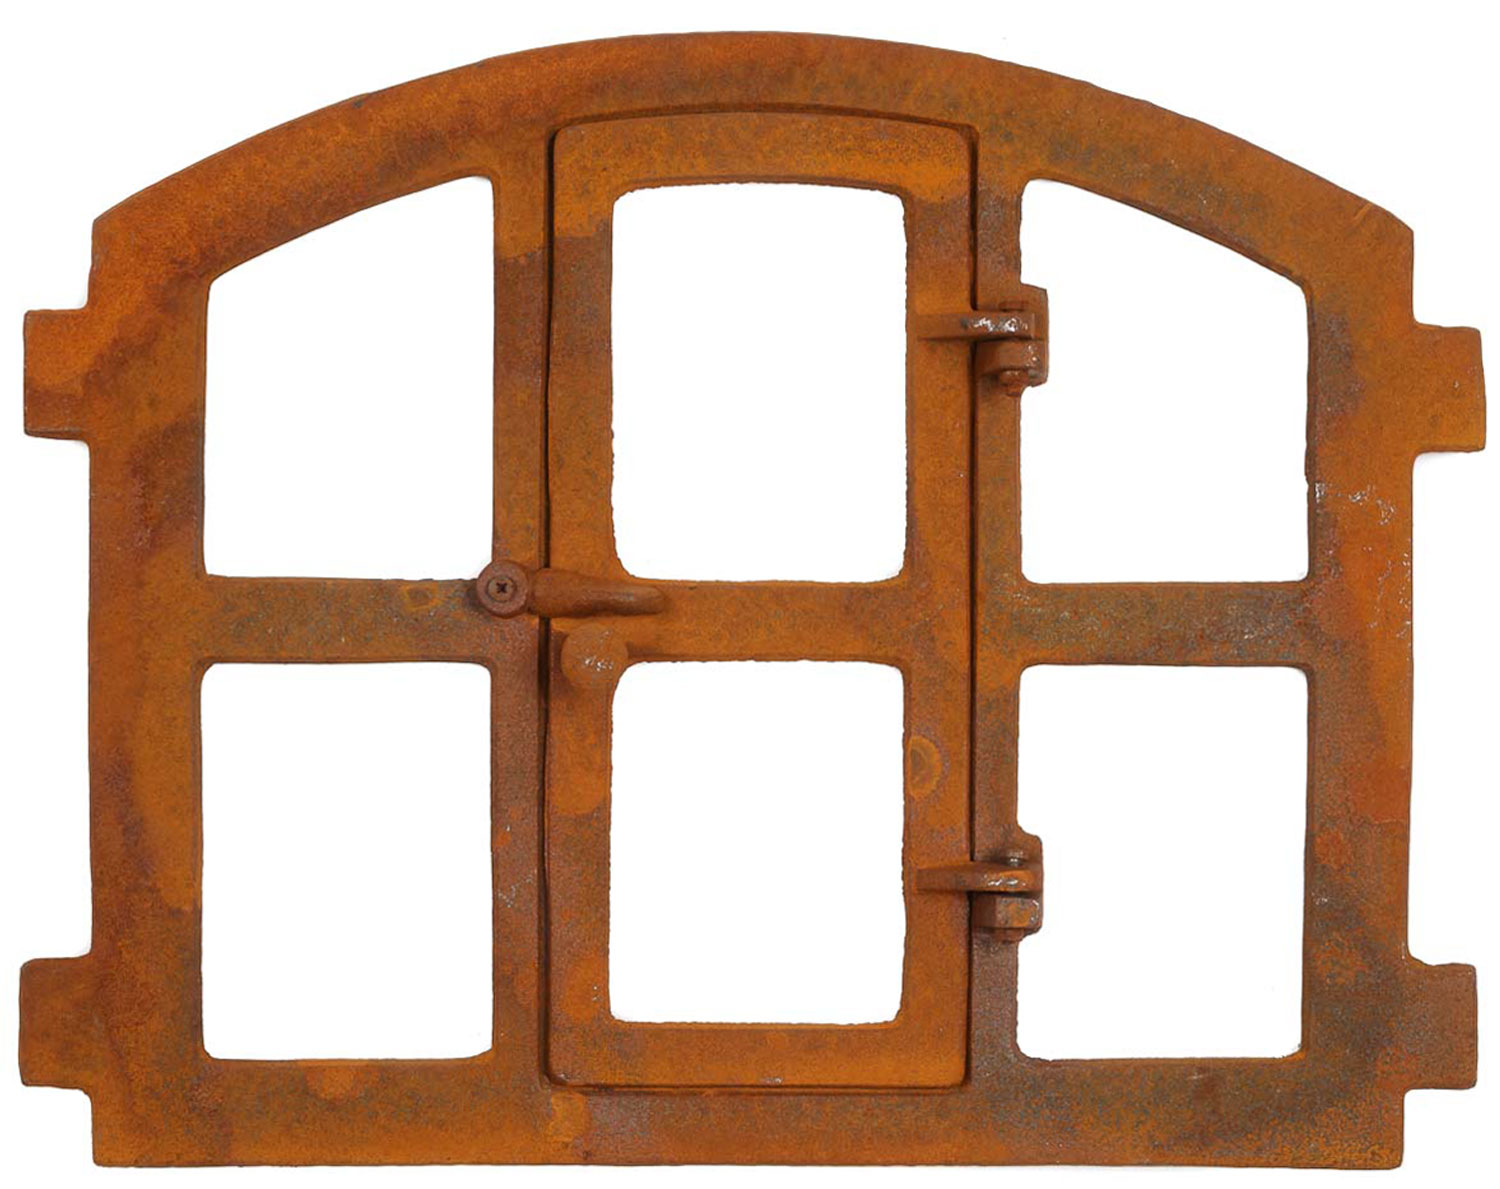 Stallfenster Eisenfenster Scheunenfenster Eisen Fenster 40x28cm im Antik-Stil